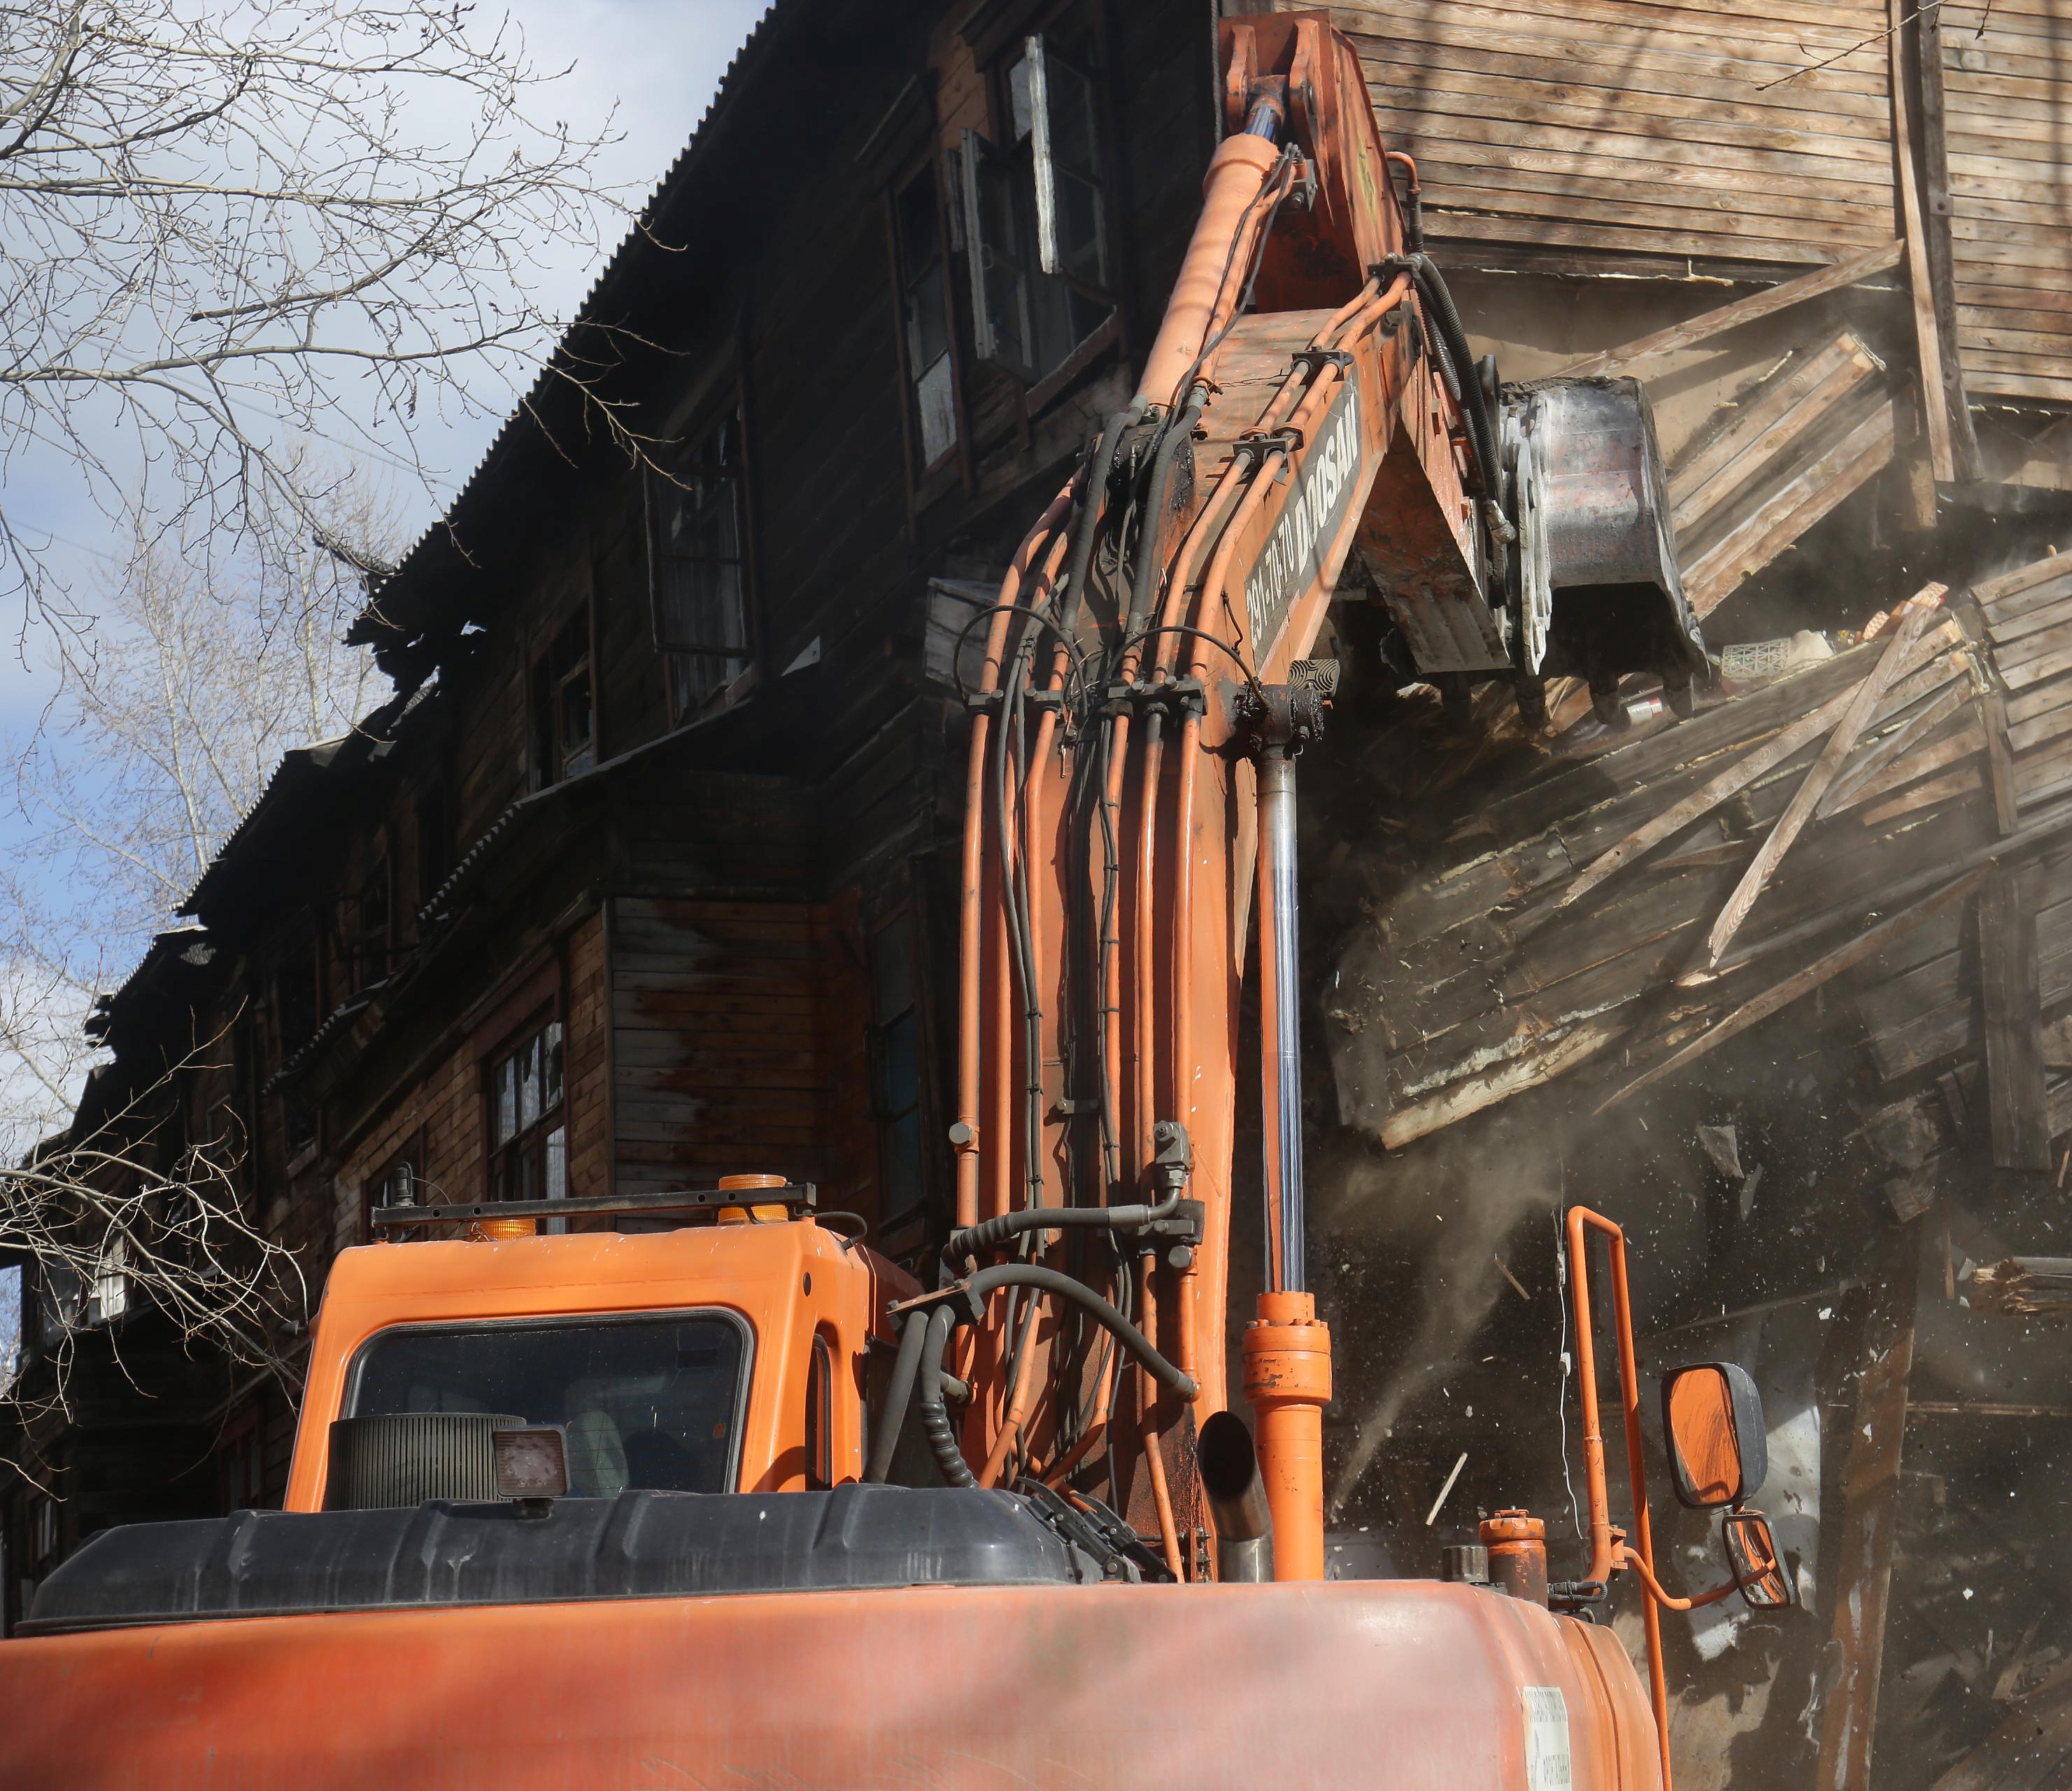 29 ветхих и аварийных домов расселят по КРТ в Новосибирске